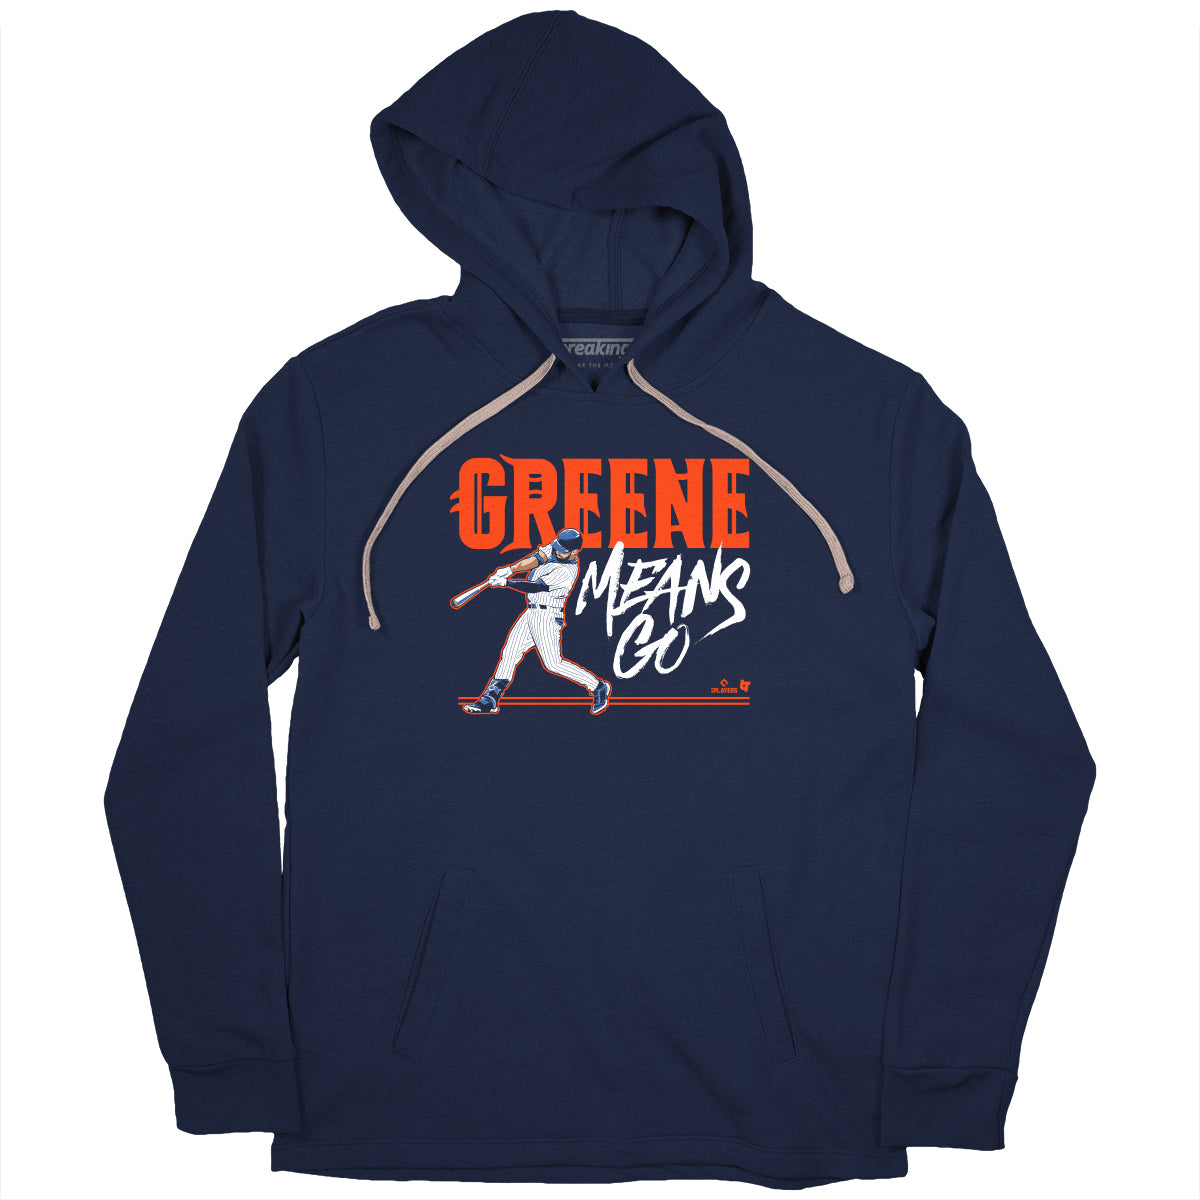 Riley Greene Means Go, Hoodie / 3XL - MLB - Sports Fan Gear | breakingt